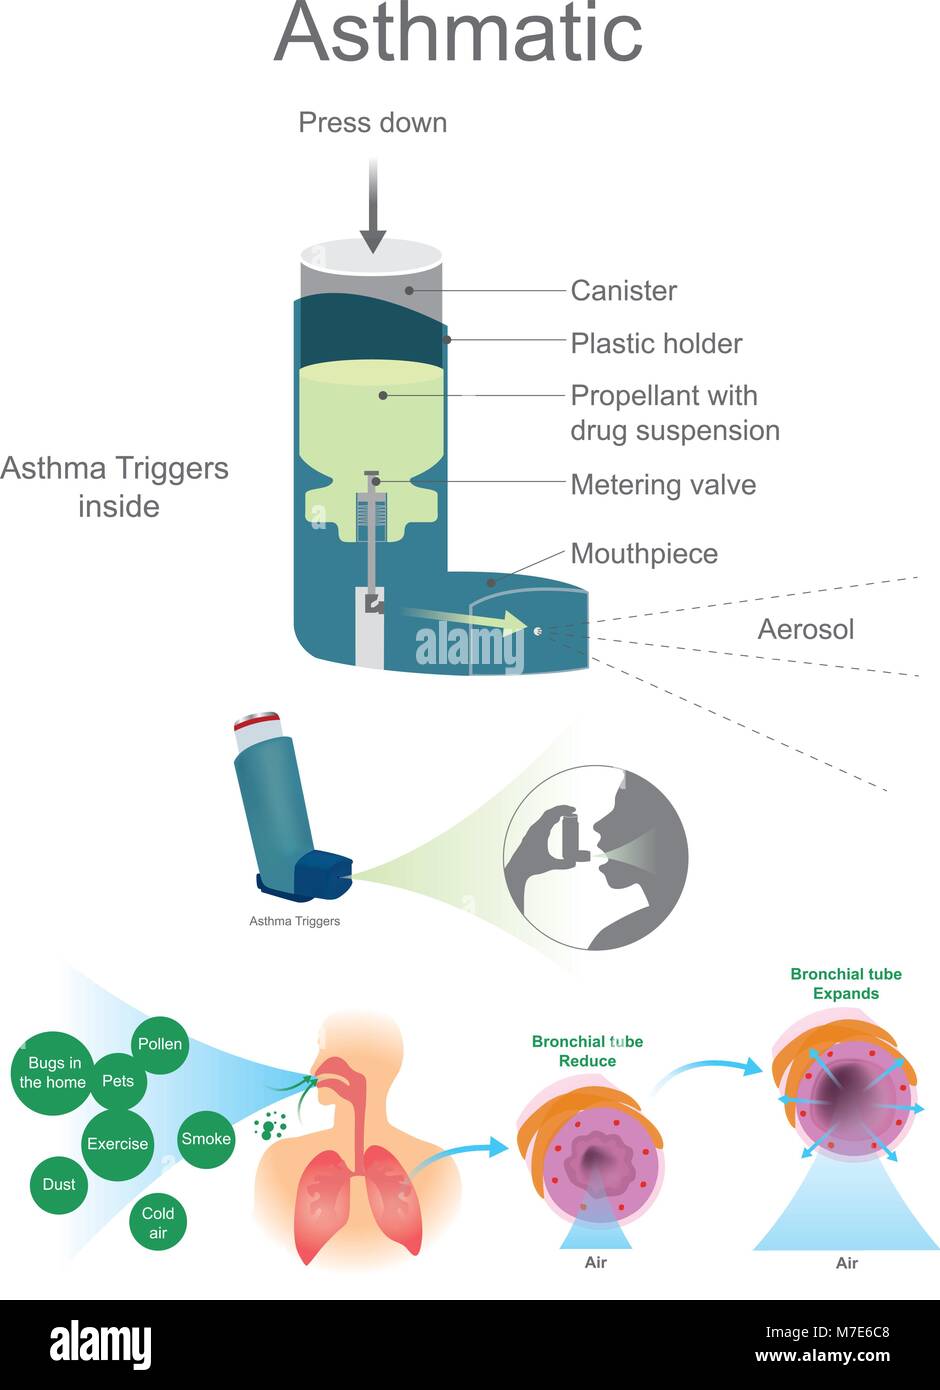 Asthma Atemwege Zellen der Lunge, Bronchien Epithelzellen und Fibroblasten bronchialen glatten Muskelzellen. Stock Vektor